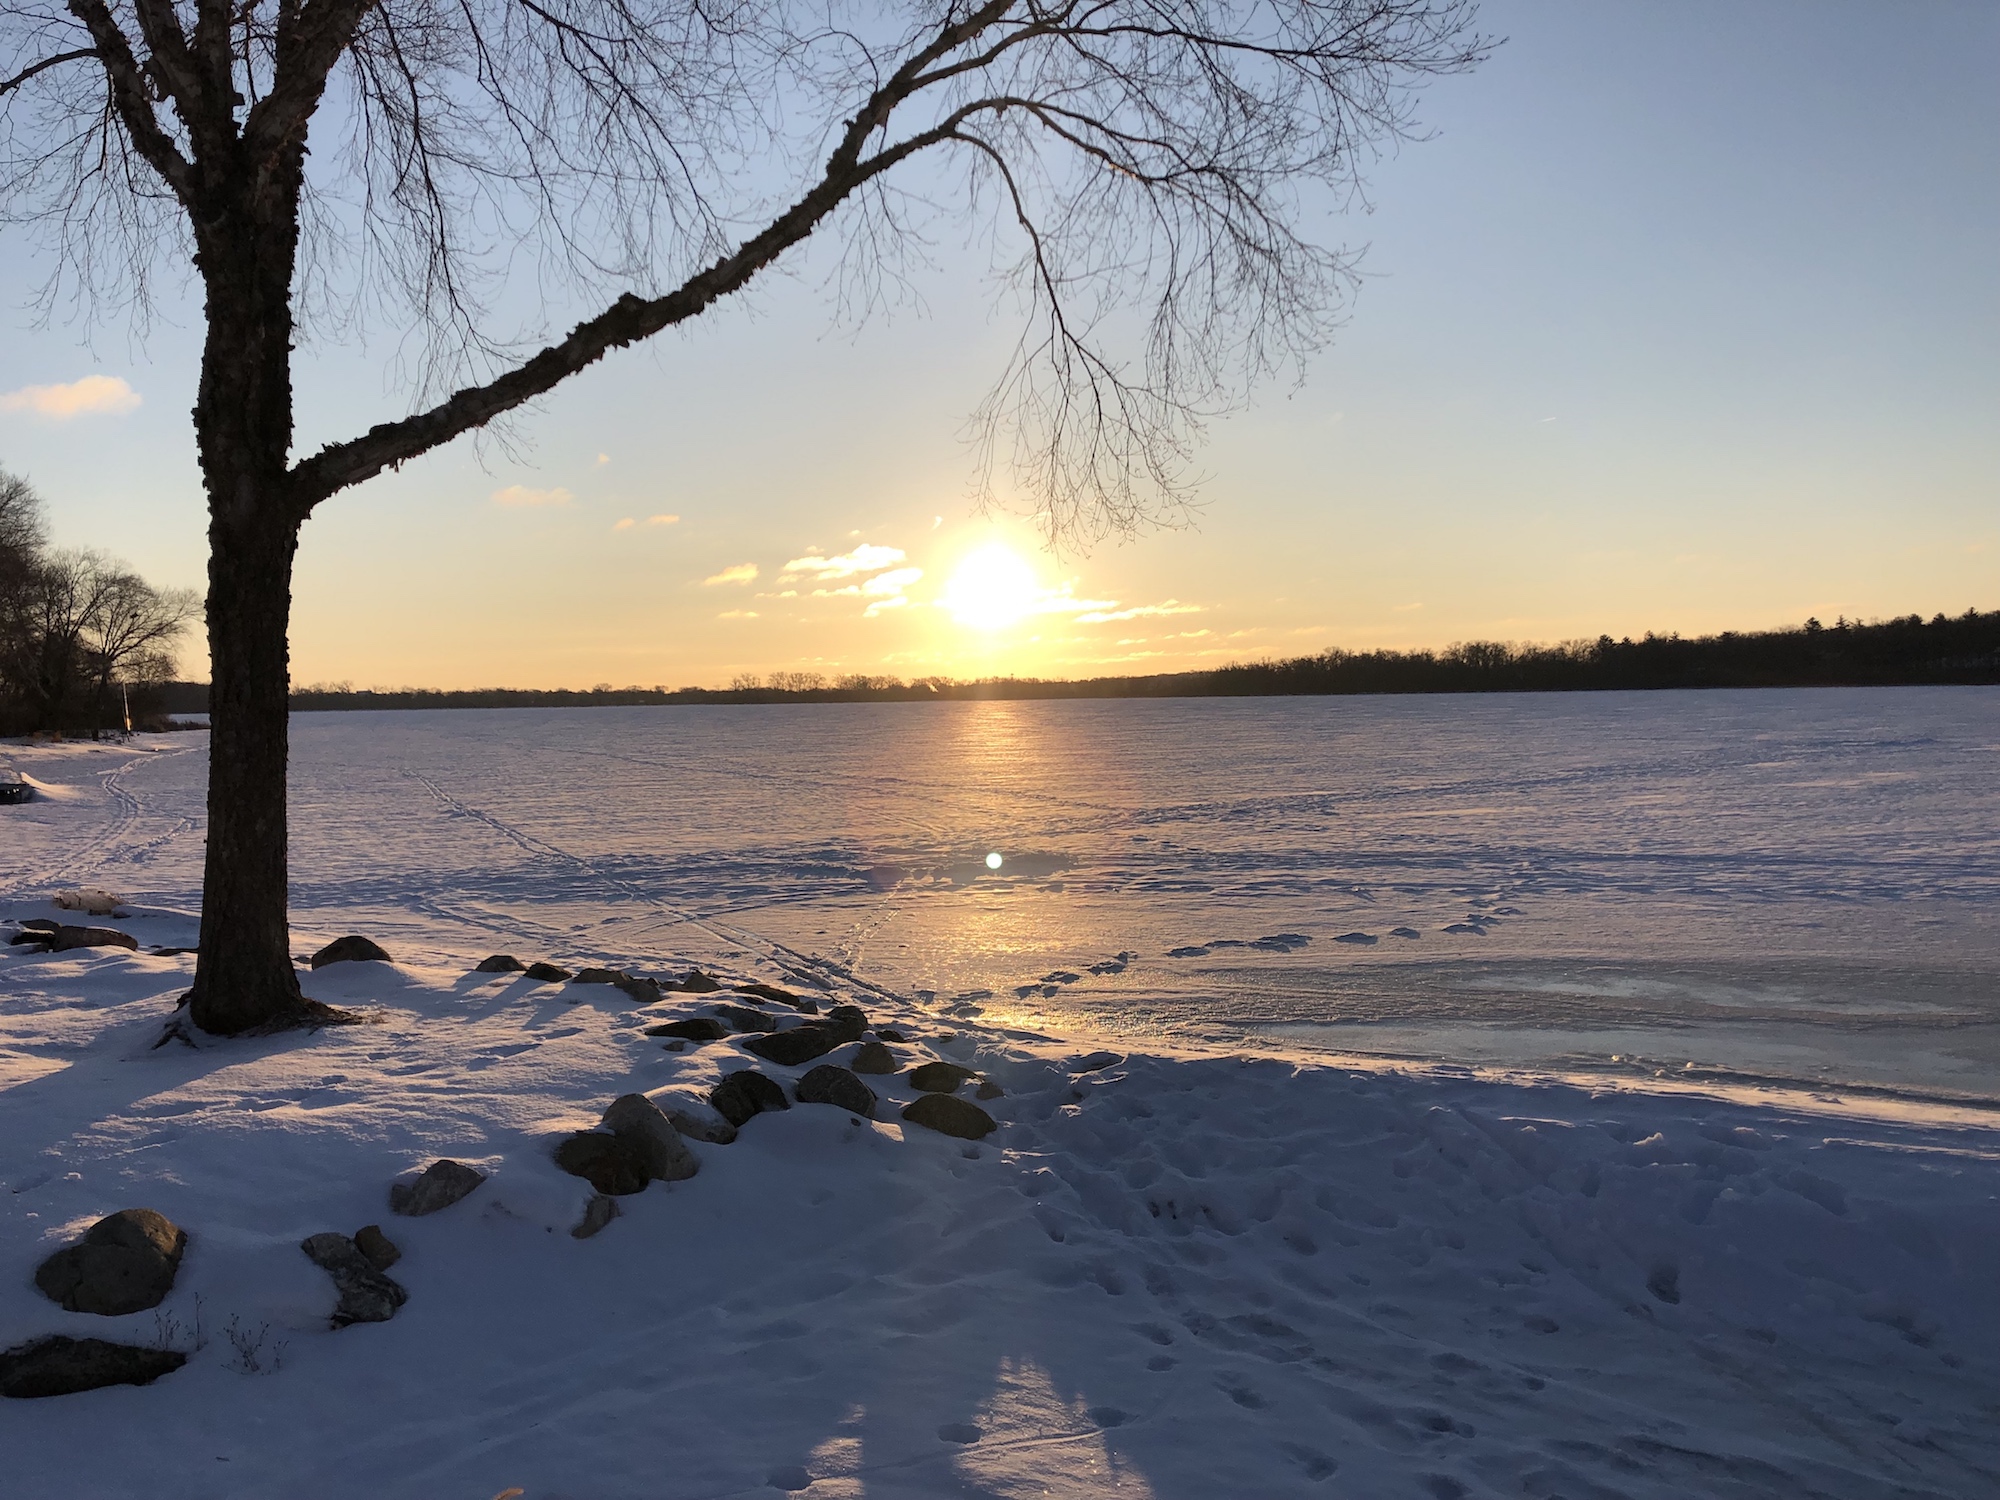 Lake Wingra on February 15, 2019.